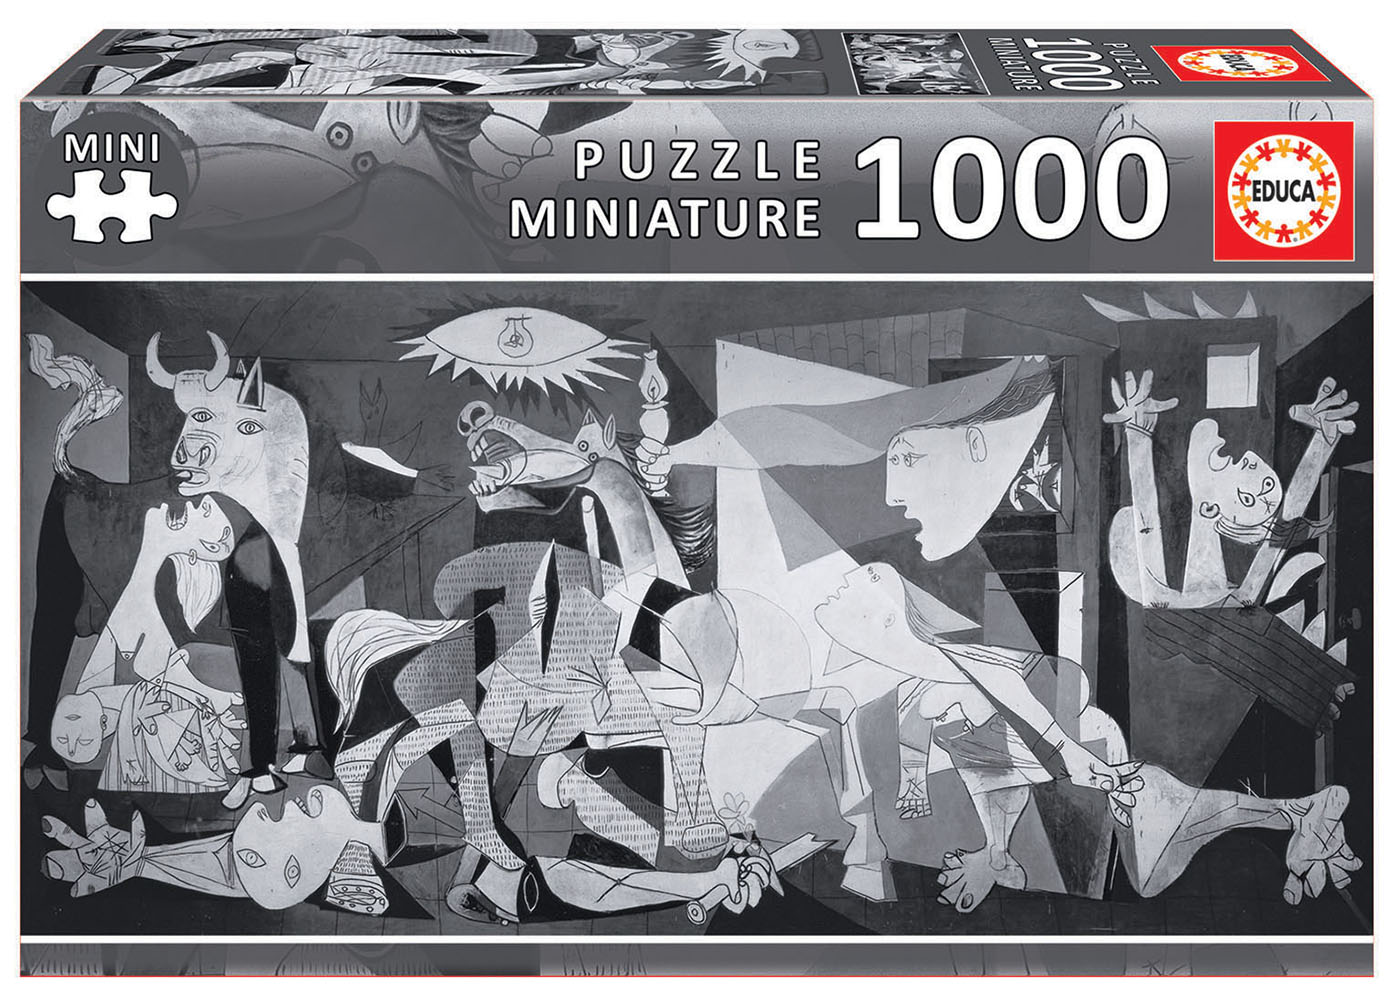 1000 Guernica, P. Picasso "Miniature"